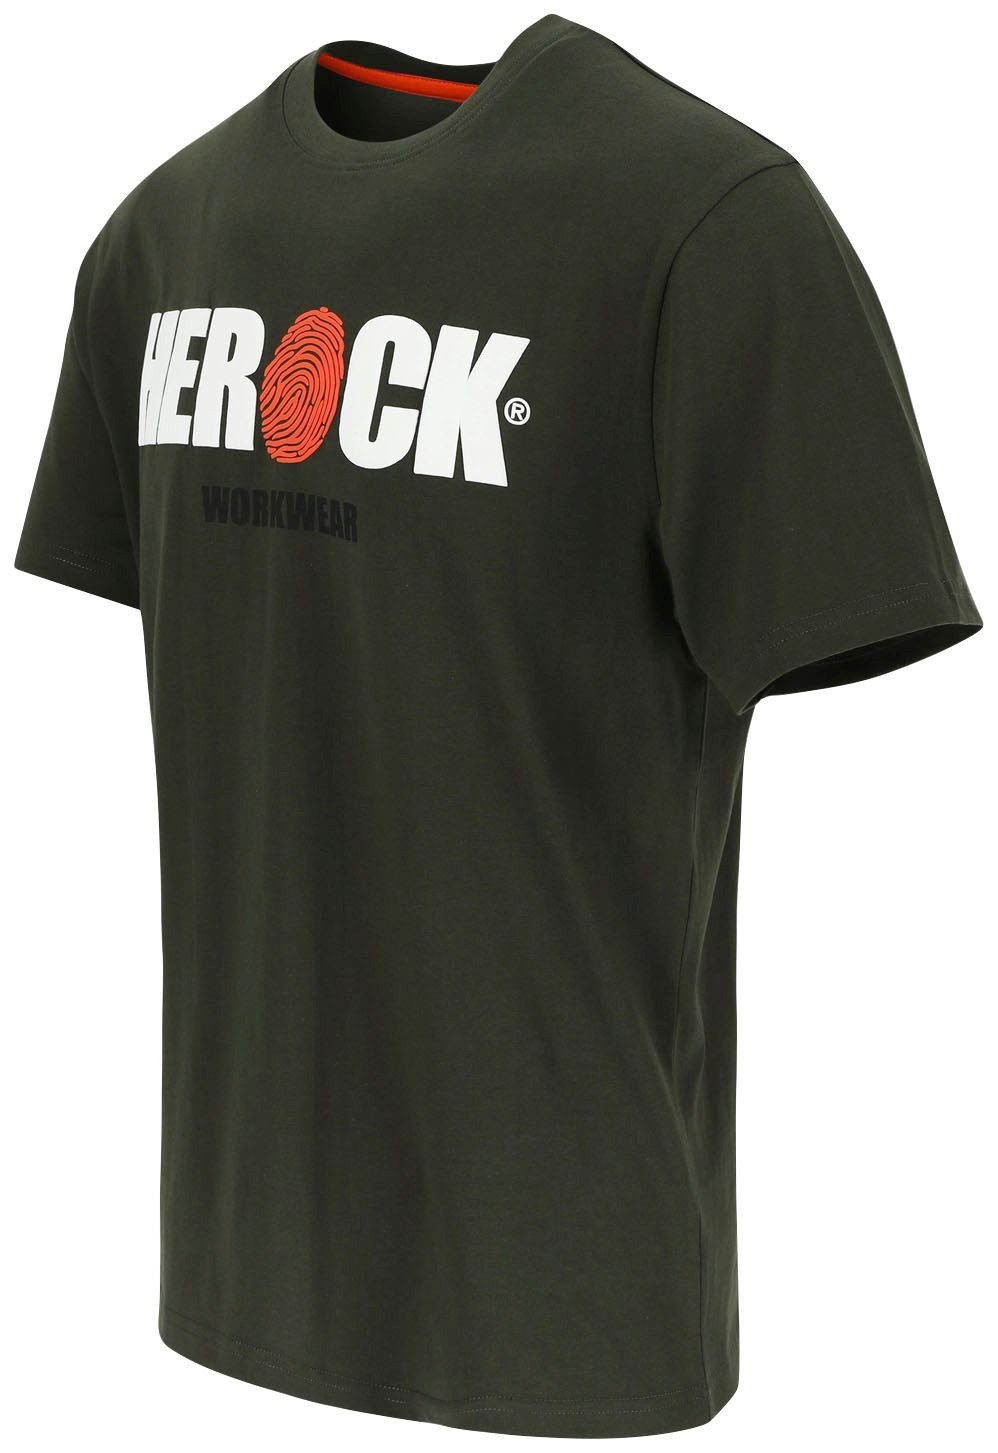 Tragegefühl Rundhals, angenehmes T-Shirt khaki mit Herock®-Aufdruck, Baumwolle, Herock ENI